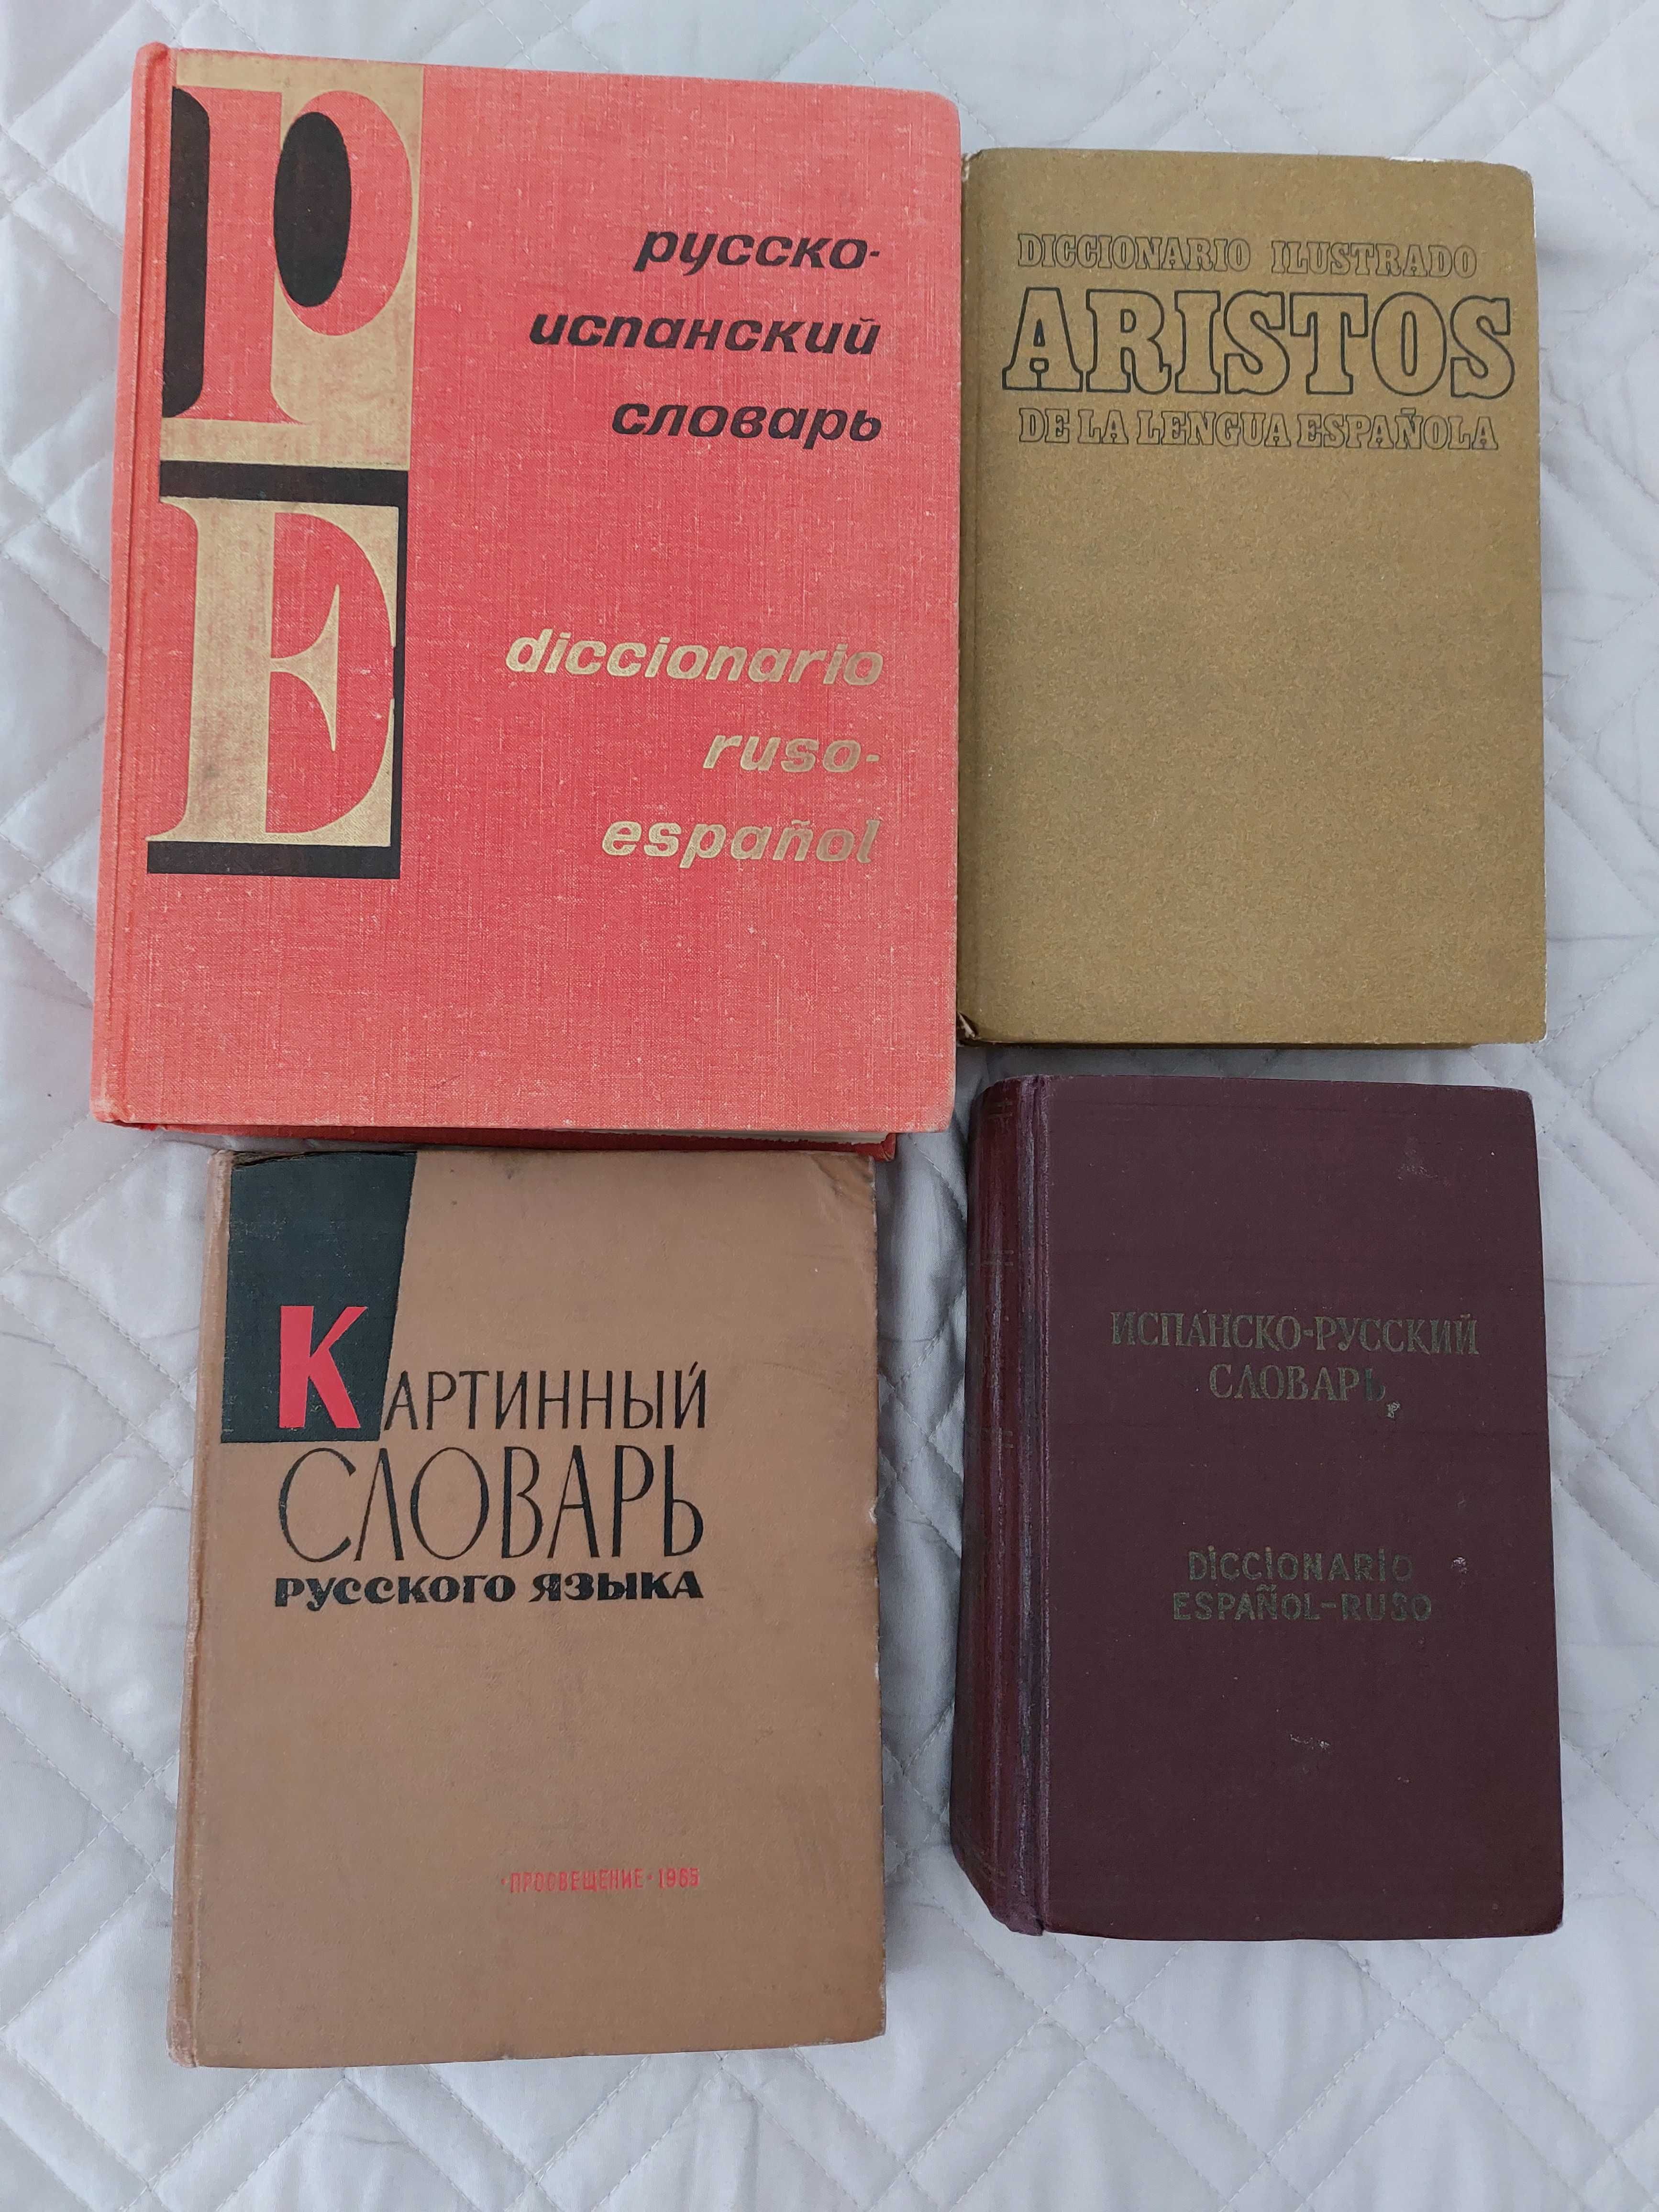 Учебники,словари,художественная литература испанского языка